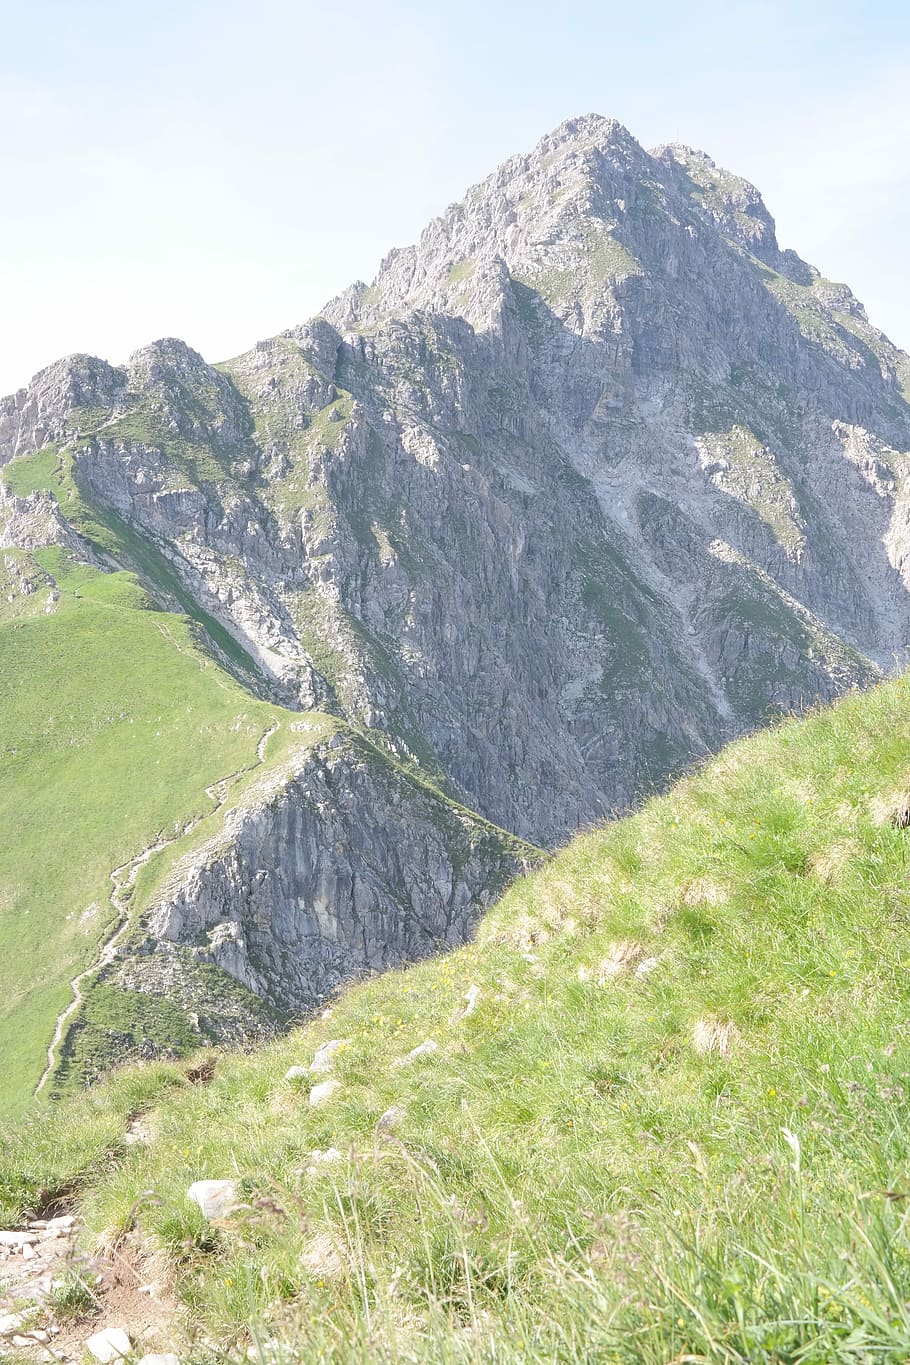 Rough, Horn, Mountain, Summit, Summit, Ridge, rough horn, mountain, summit, ridge, tightrope walk, allgäu alps